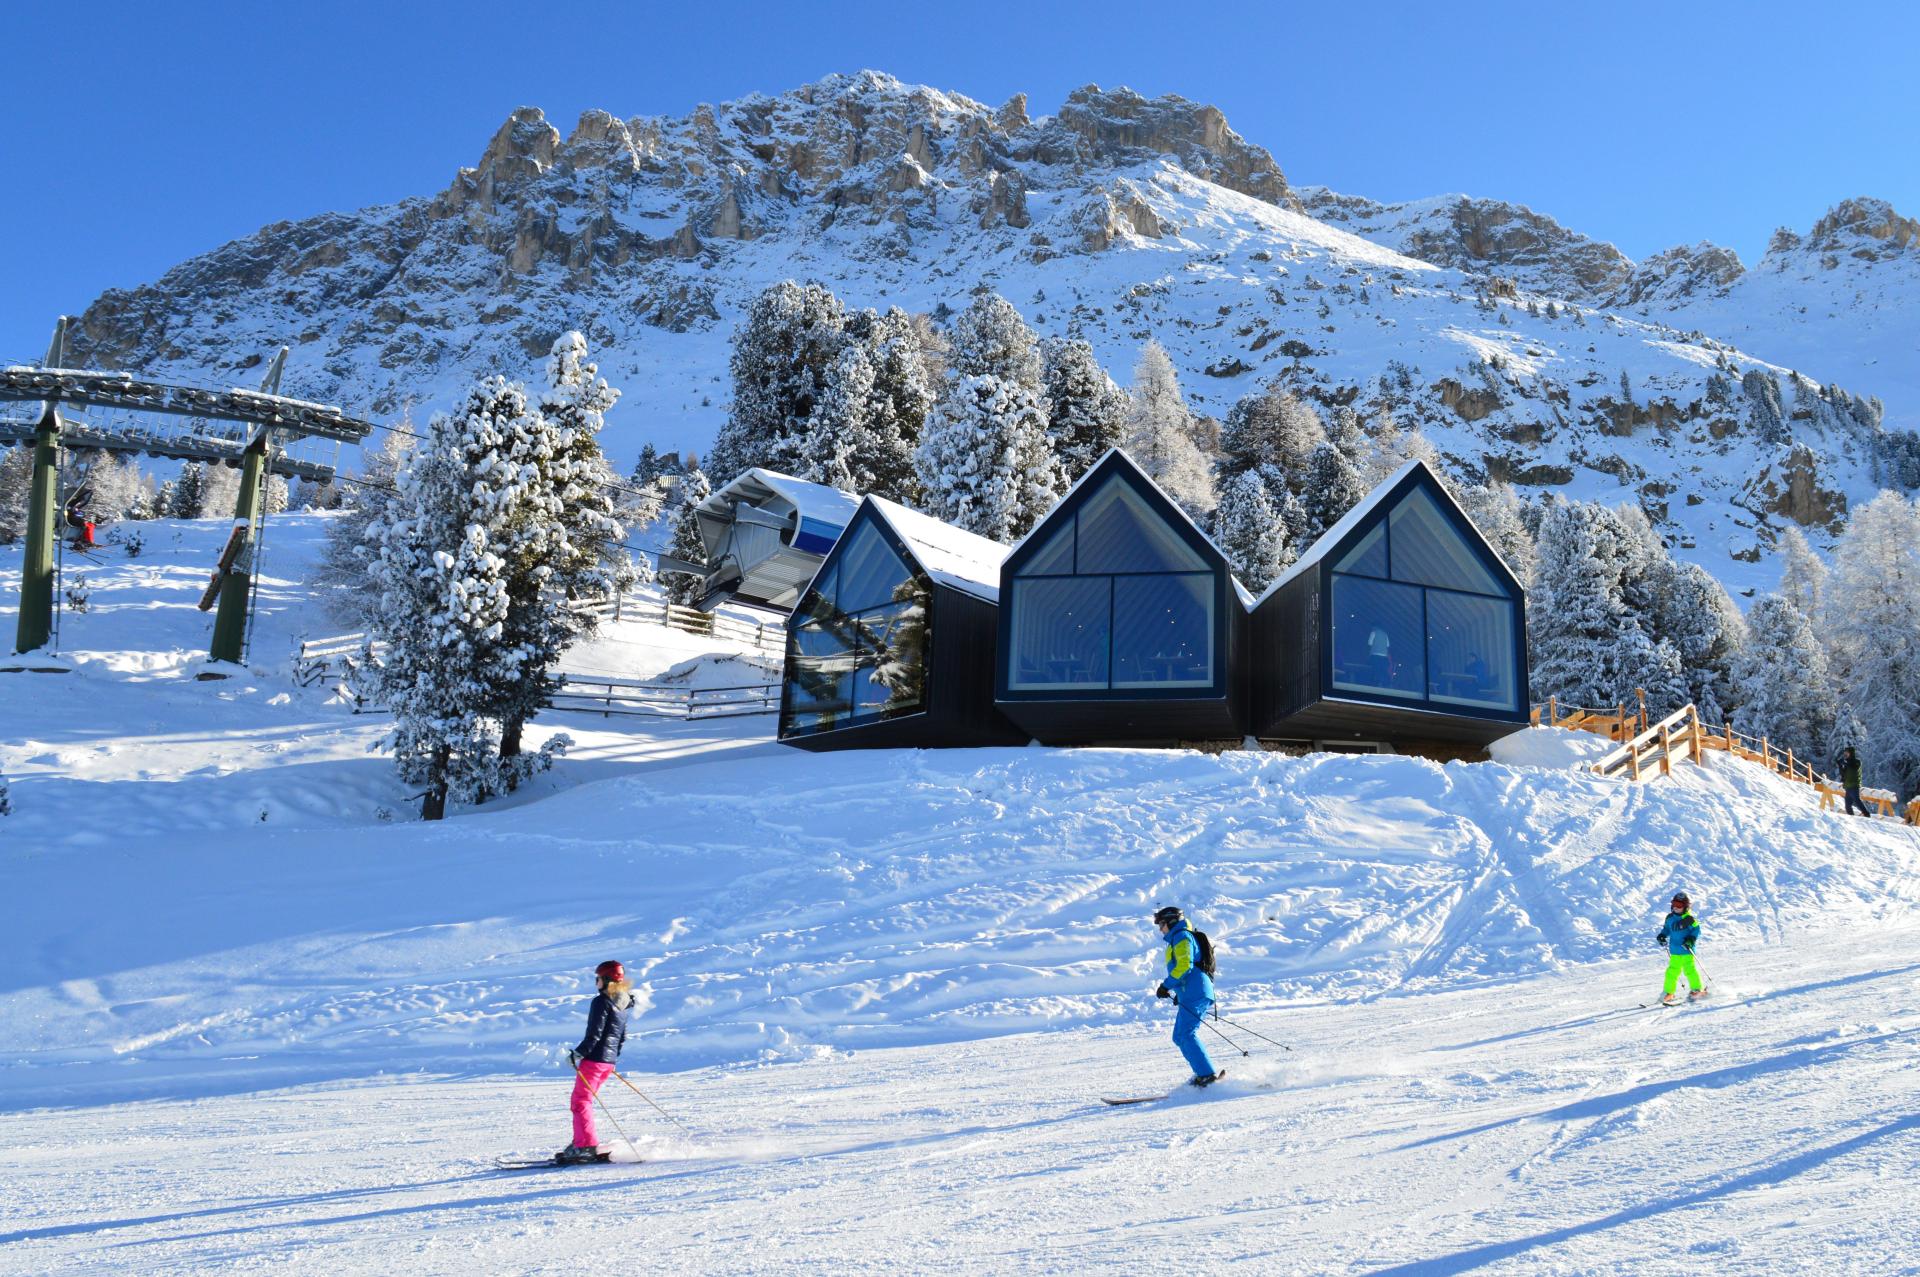 Ubezpieczenie turystyczne przy wyjeździe na narty do Włoch od 2022 r. będzie w tym kraju obowiązkowe (fot. IDM Südtirol-Alto Adige/Thomas Ondertoller)